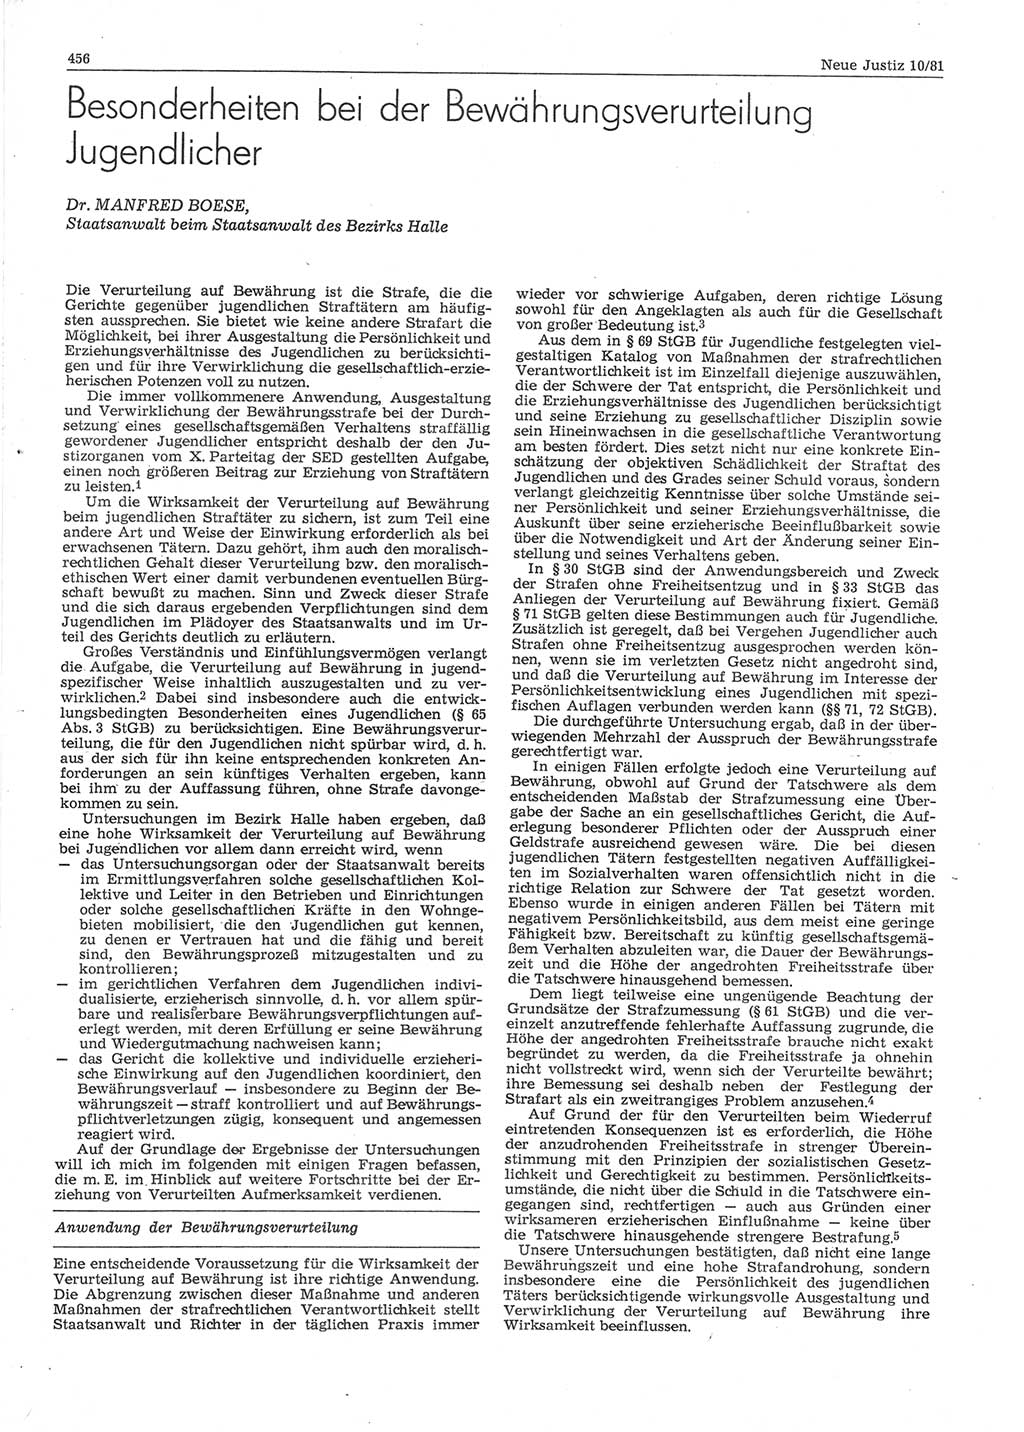 Neue Justiz (NJ), Zeitschrift für sozialistisches Recht und Gesetzlichkeit [Deutsche Demokratische Republik (DDR)], 35. Jahrgang 1981, Seite 456 (NJ DDR 1981, S. 456)